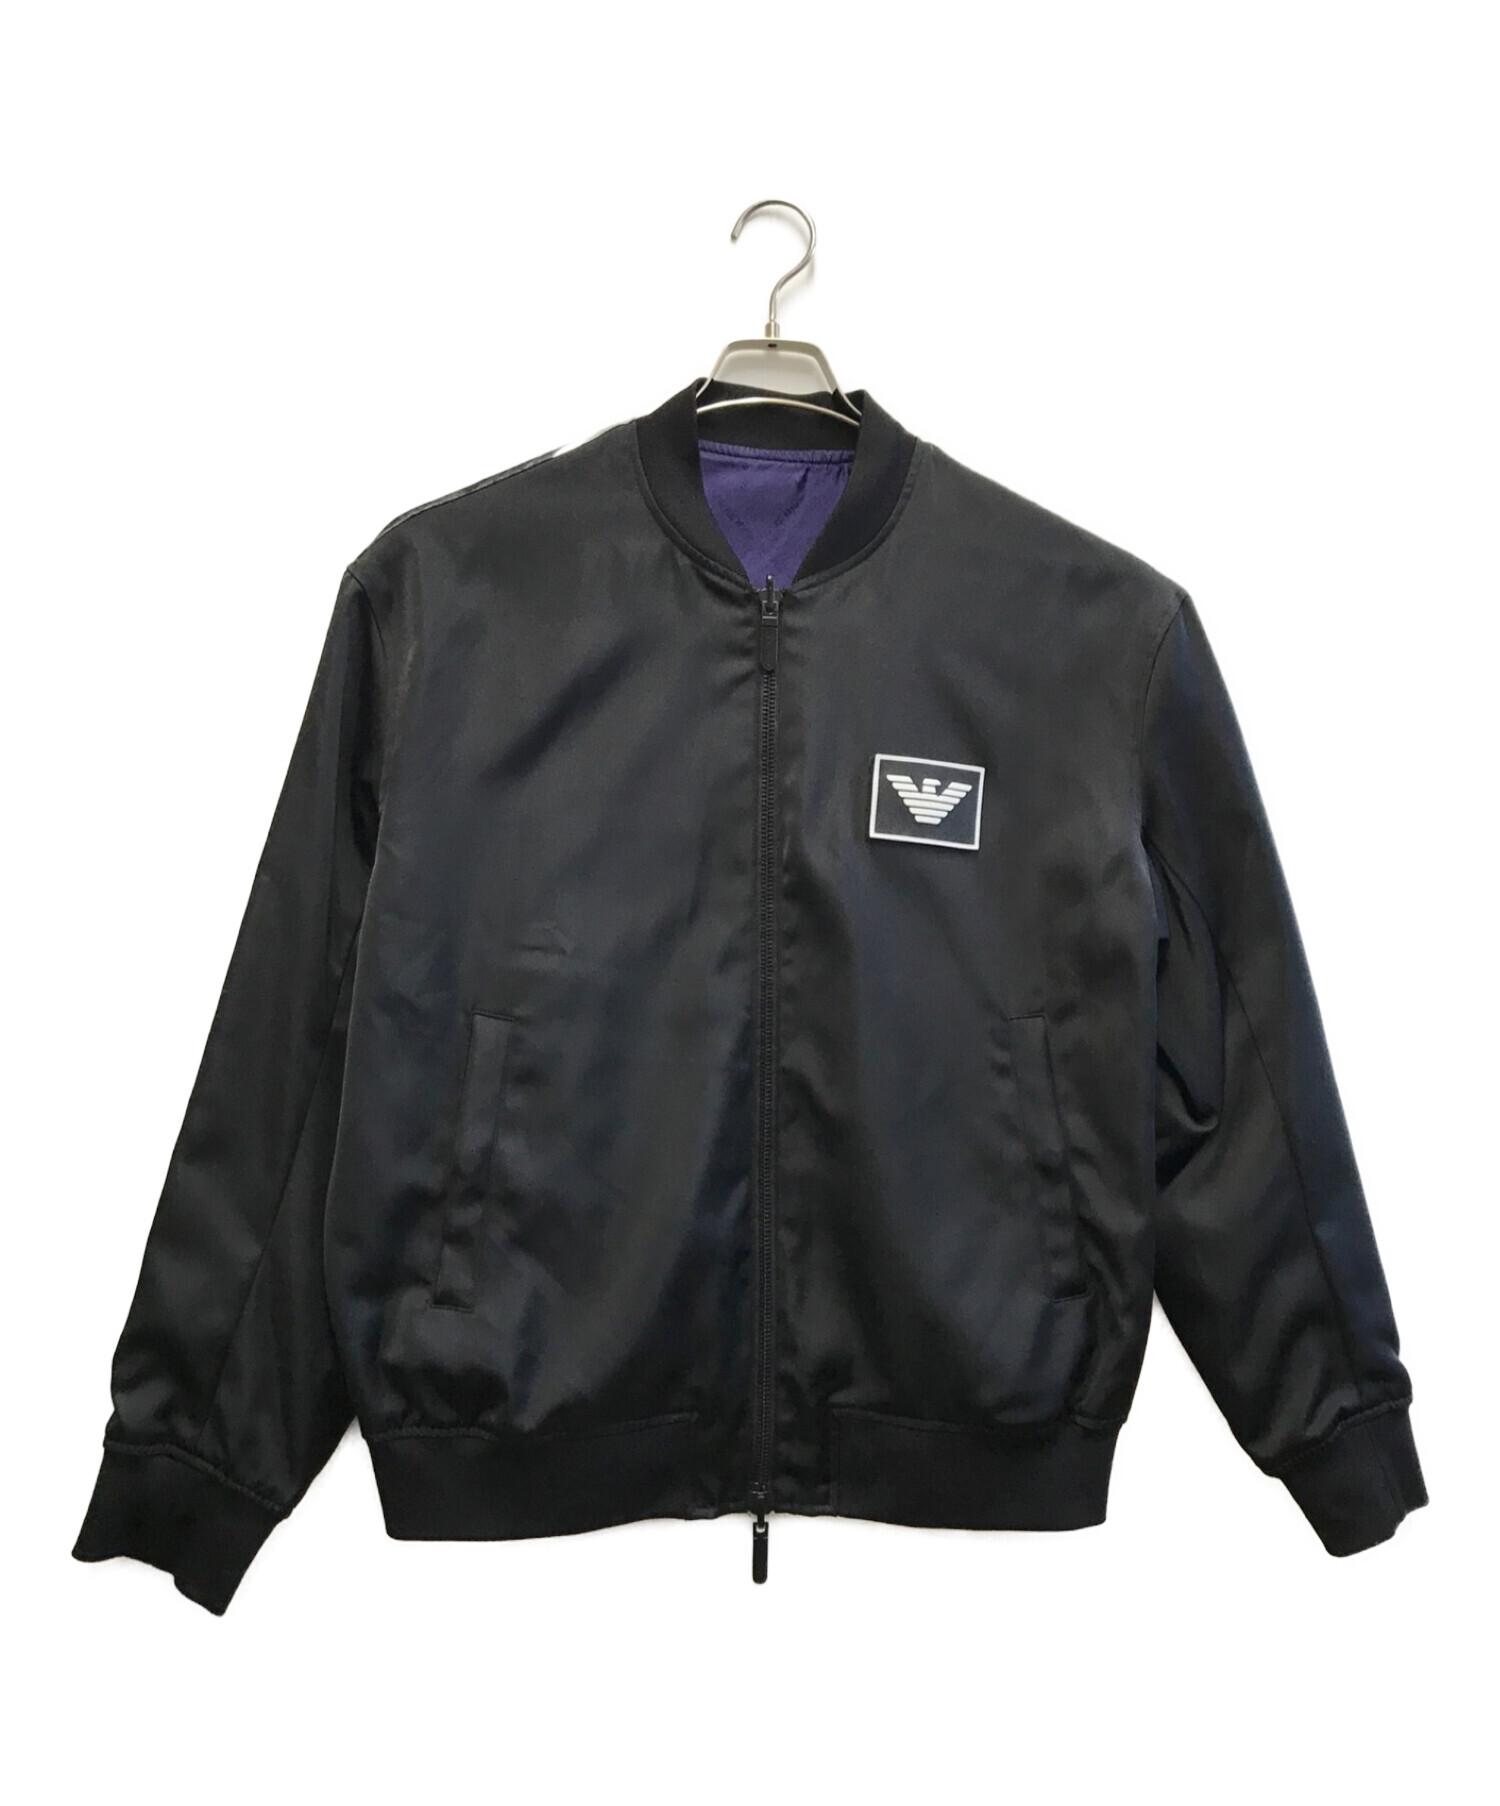 EMPORIO ARMANI (エンポリオアルマーニ) リバーシブルボンバージャケット ブラック×パープル サイズ:52